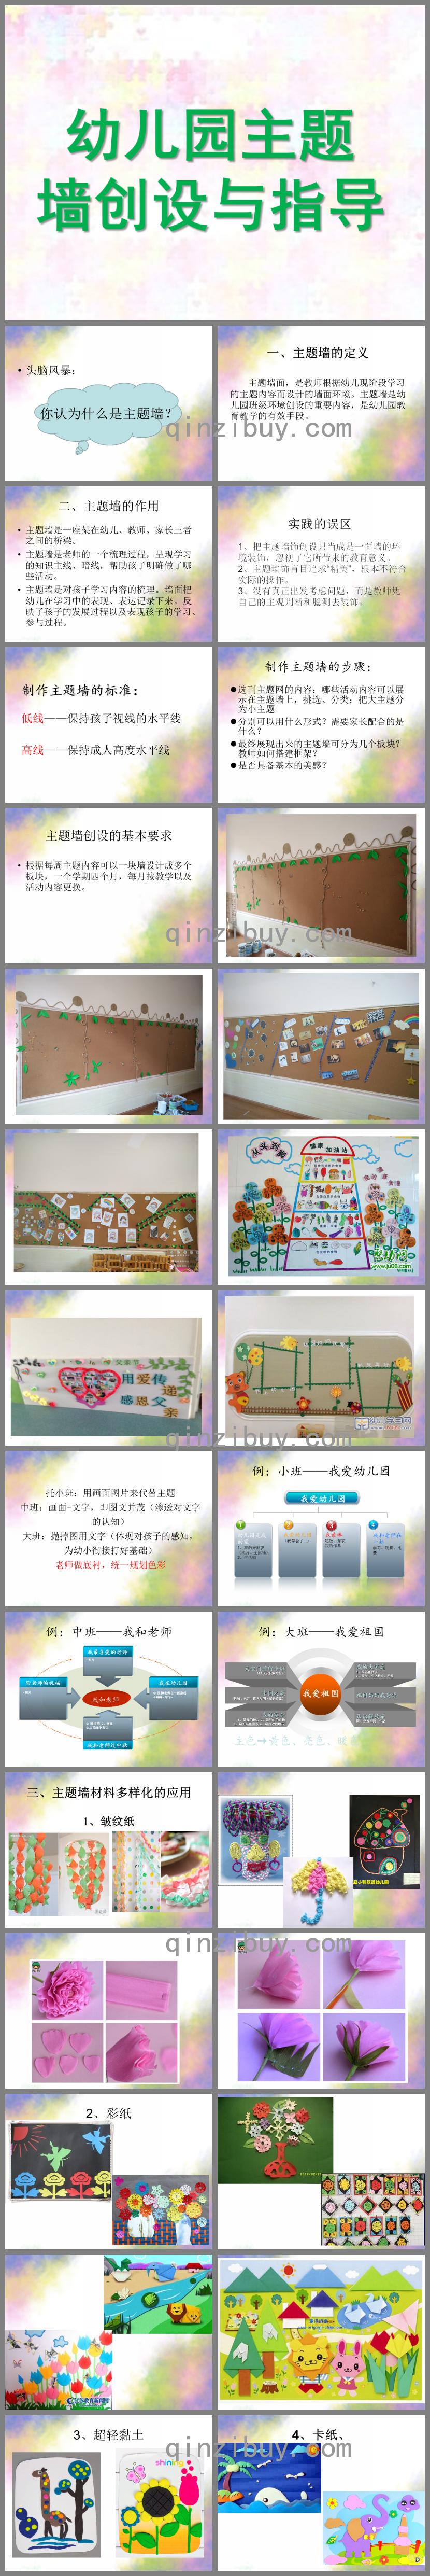 幼儿园主题墙创设与指导PPT课件